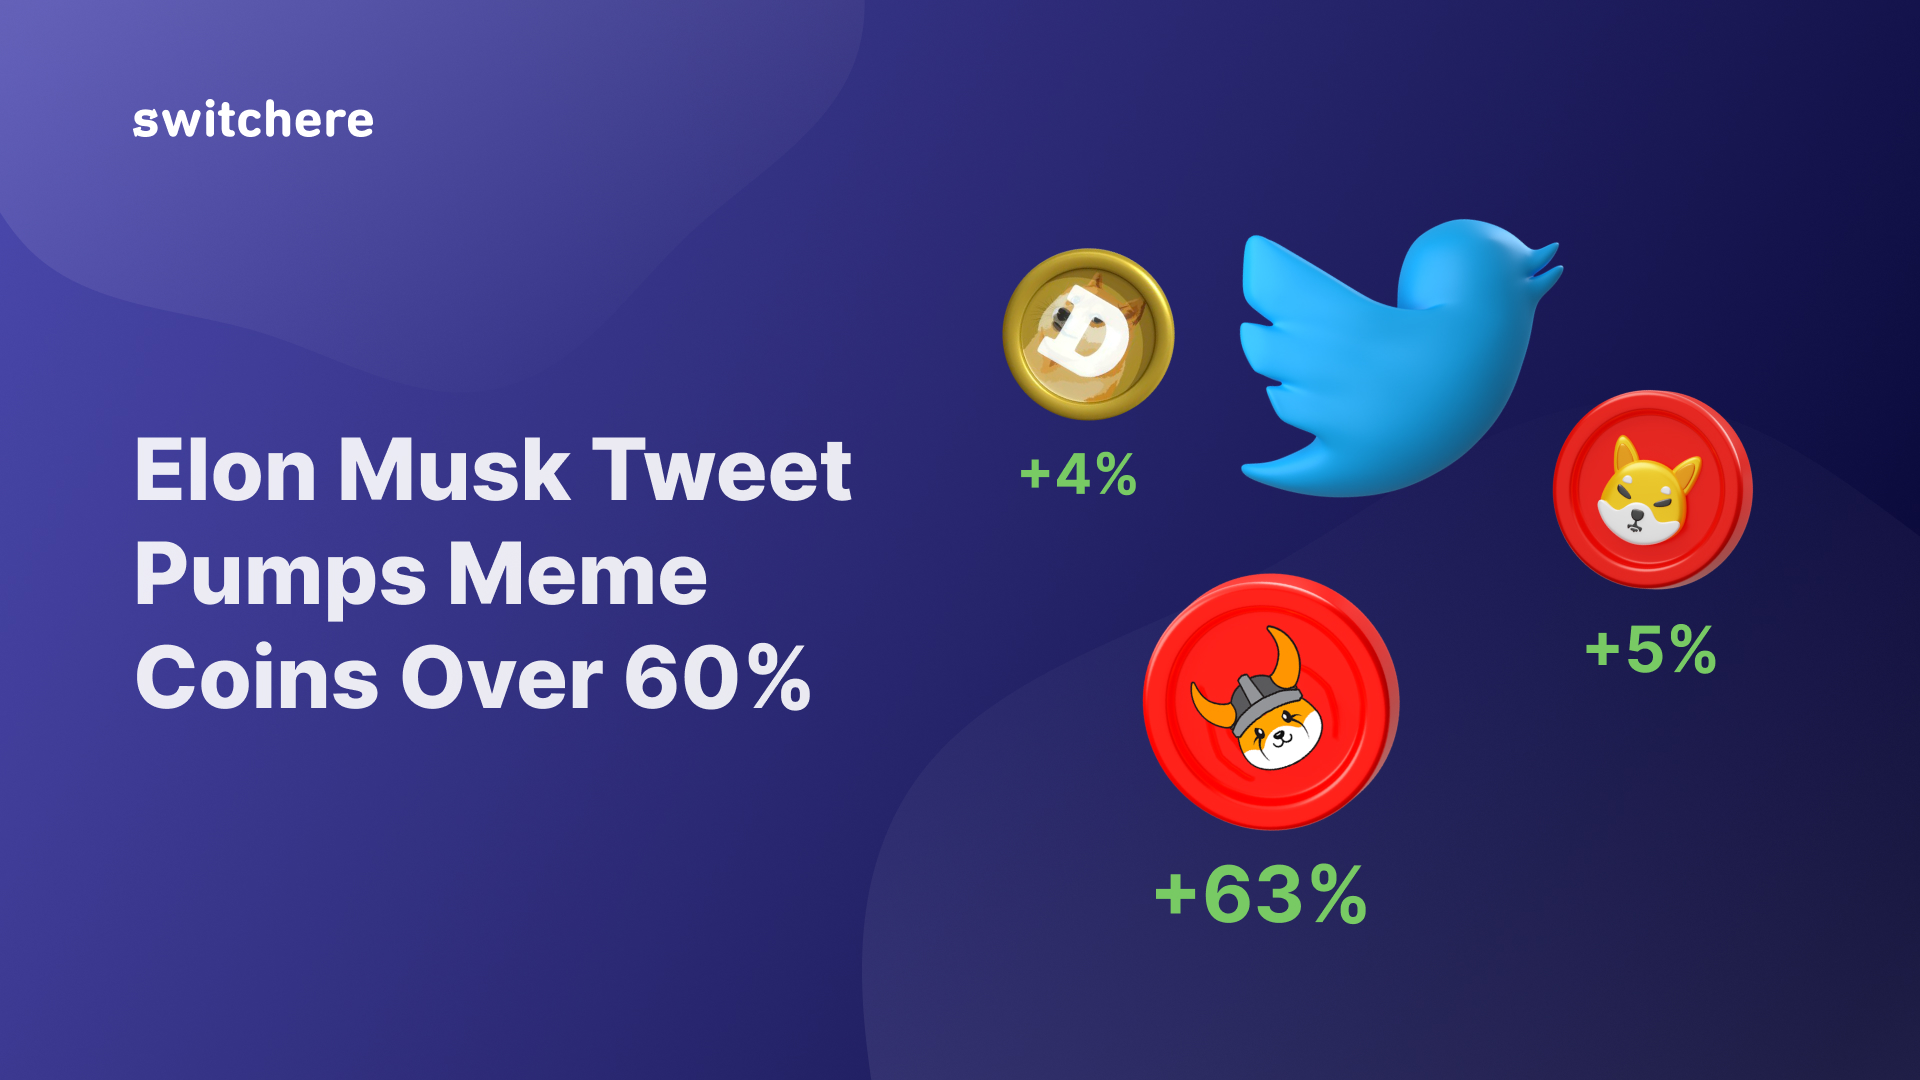 Elon Musk Tweet Pumps Meme Coins Over 60%